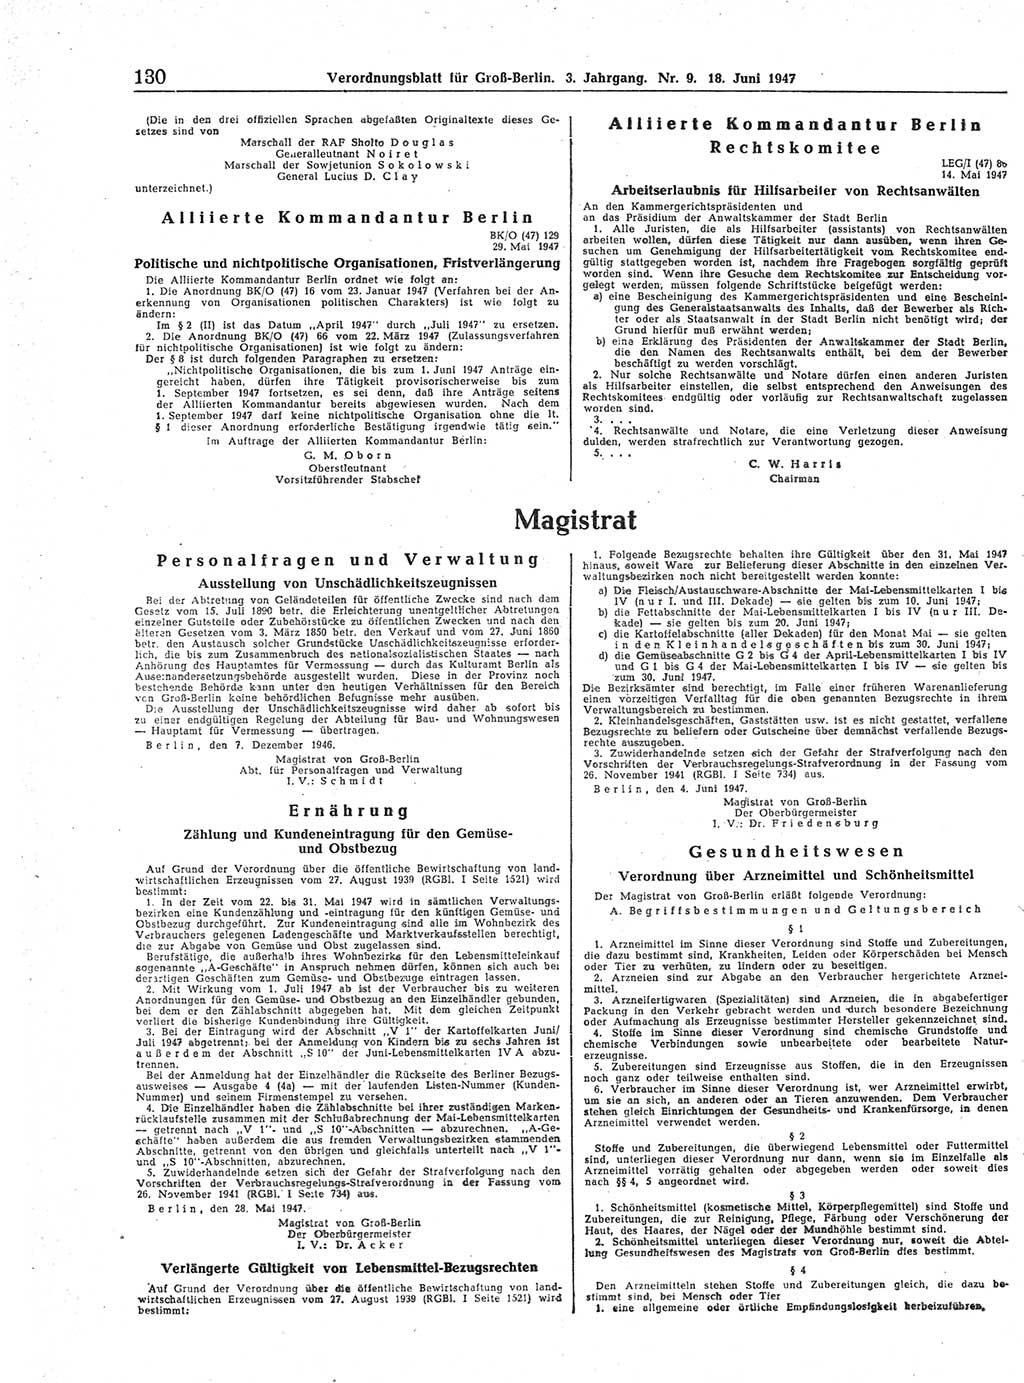 Verordnungsblatt (VOBl.) für Groß-Berlin 1947, Seite 130 (VOBl. Bln. 1947, S. 130)